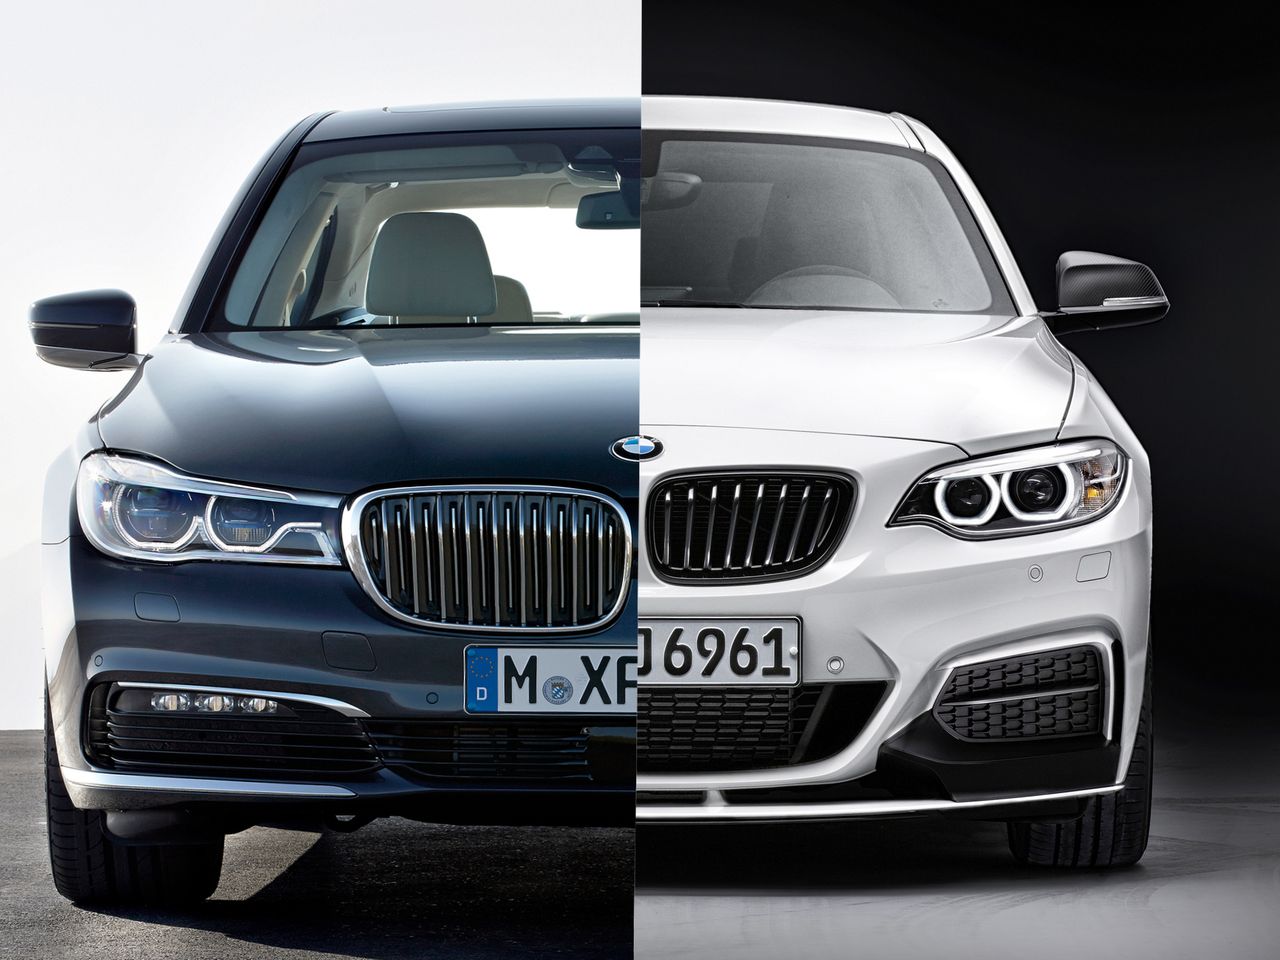 Najmocniejszy diesel w historii BMW w Serii 7 i koniec M135i / M235i